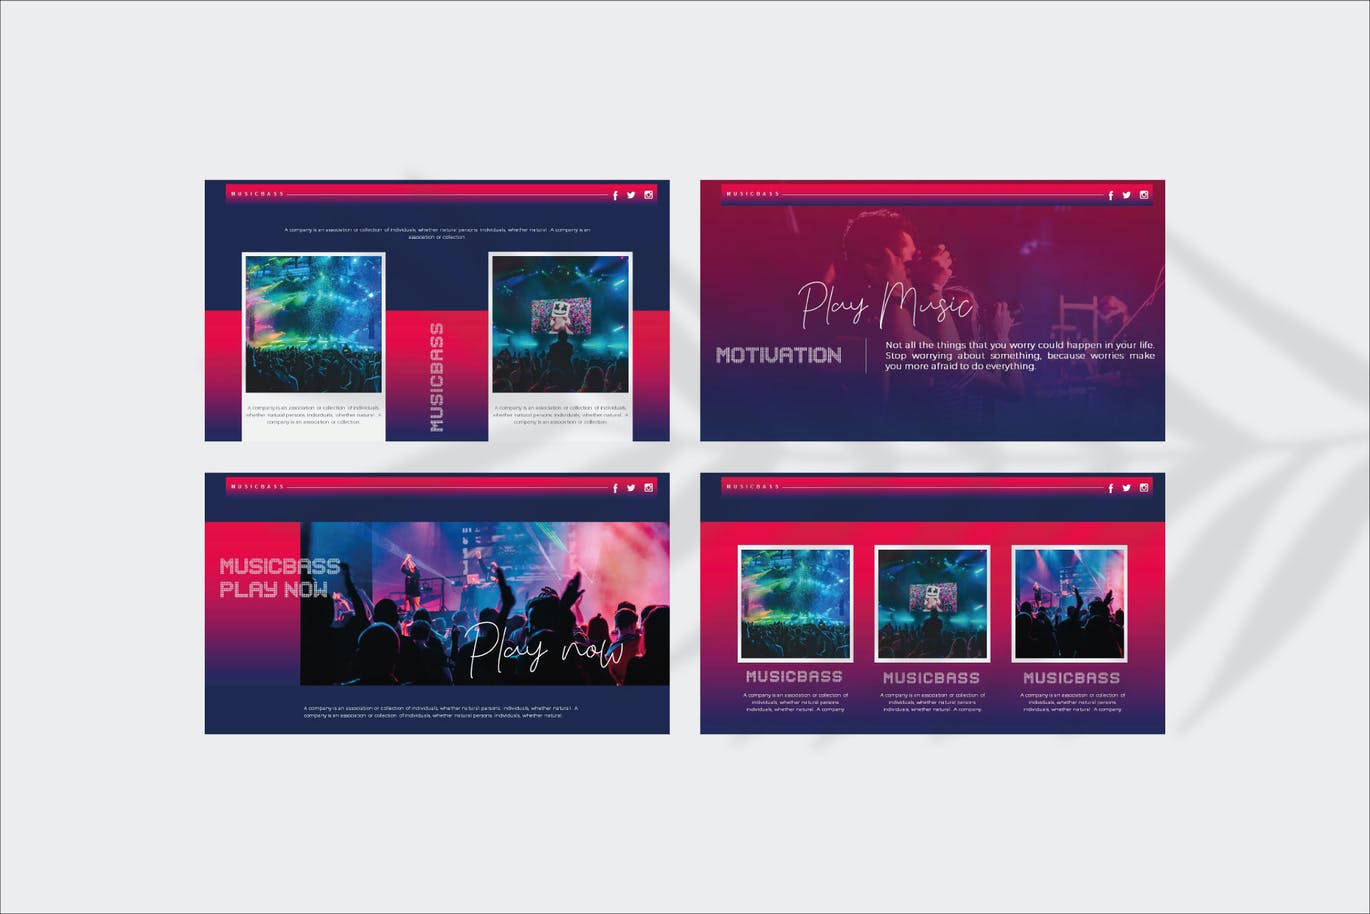 宣传幻灯片演示音乐演唱会PPT模板 MUSICBASS – Powerpoint Template设计素材模板